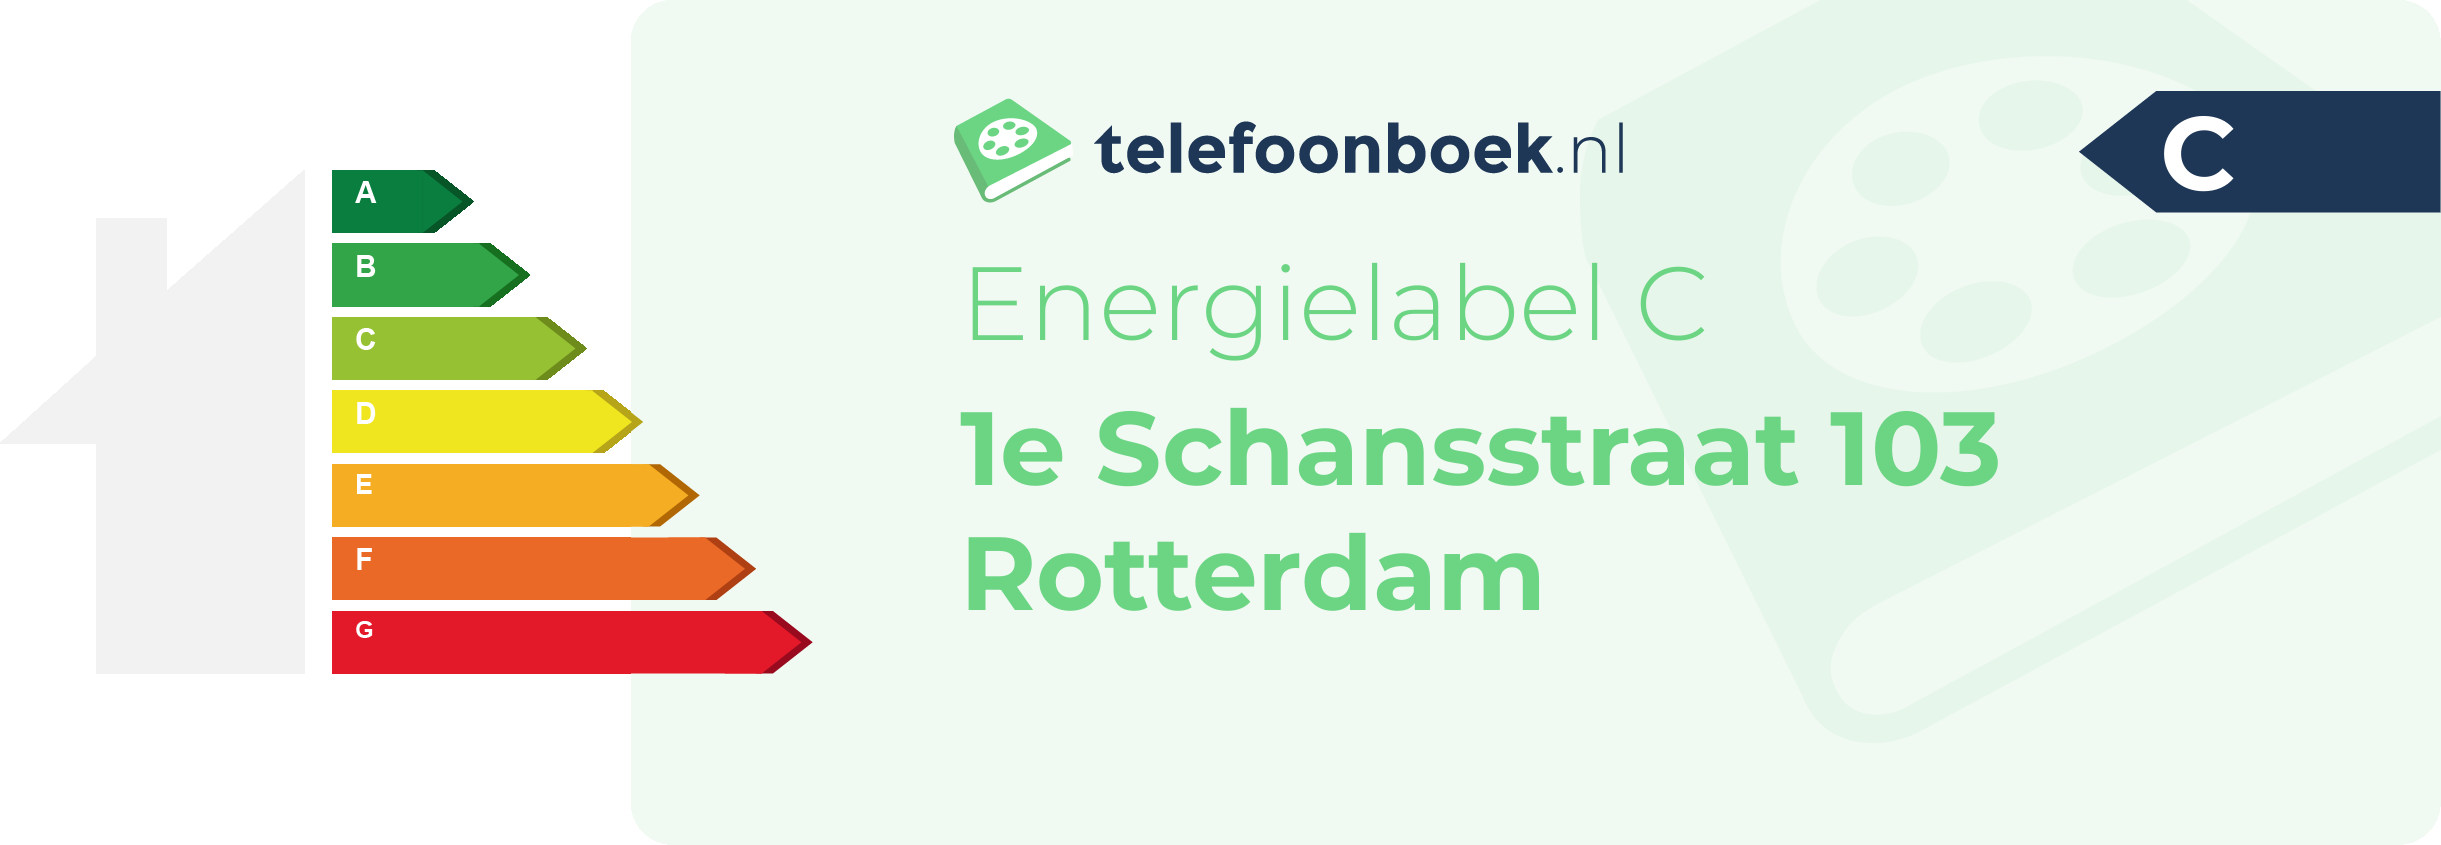 Energielabel 1e Schansstraat 103 Rotterdam